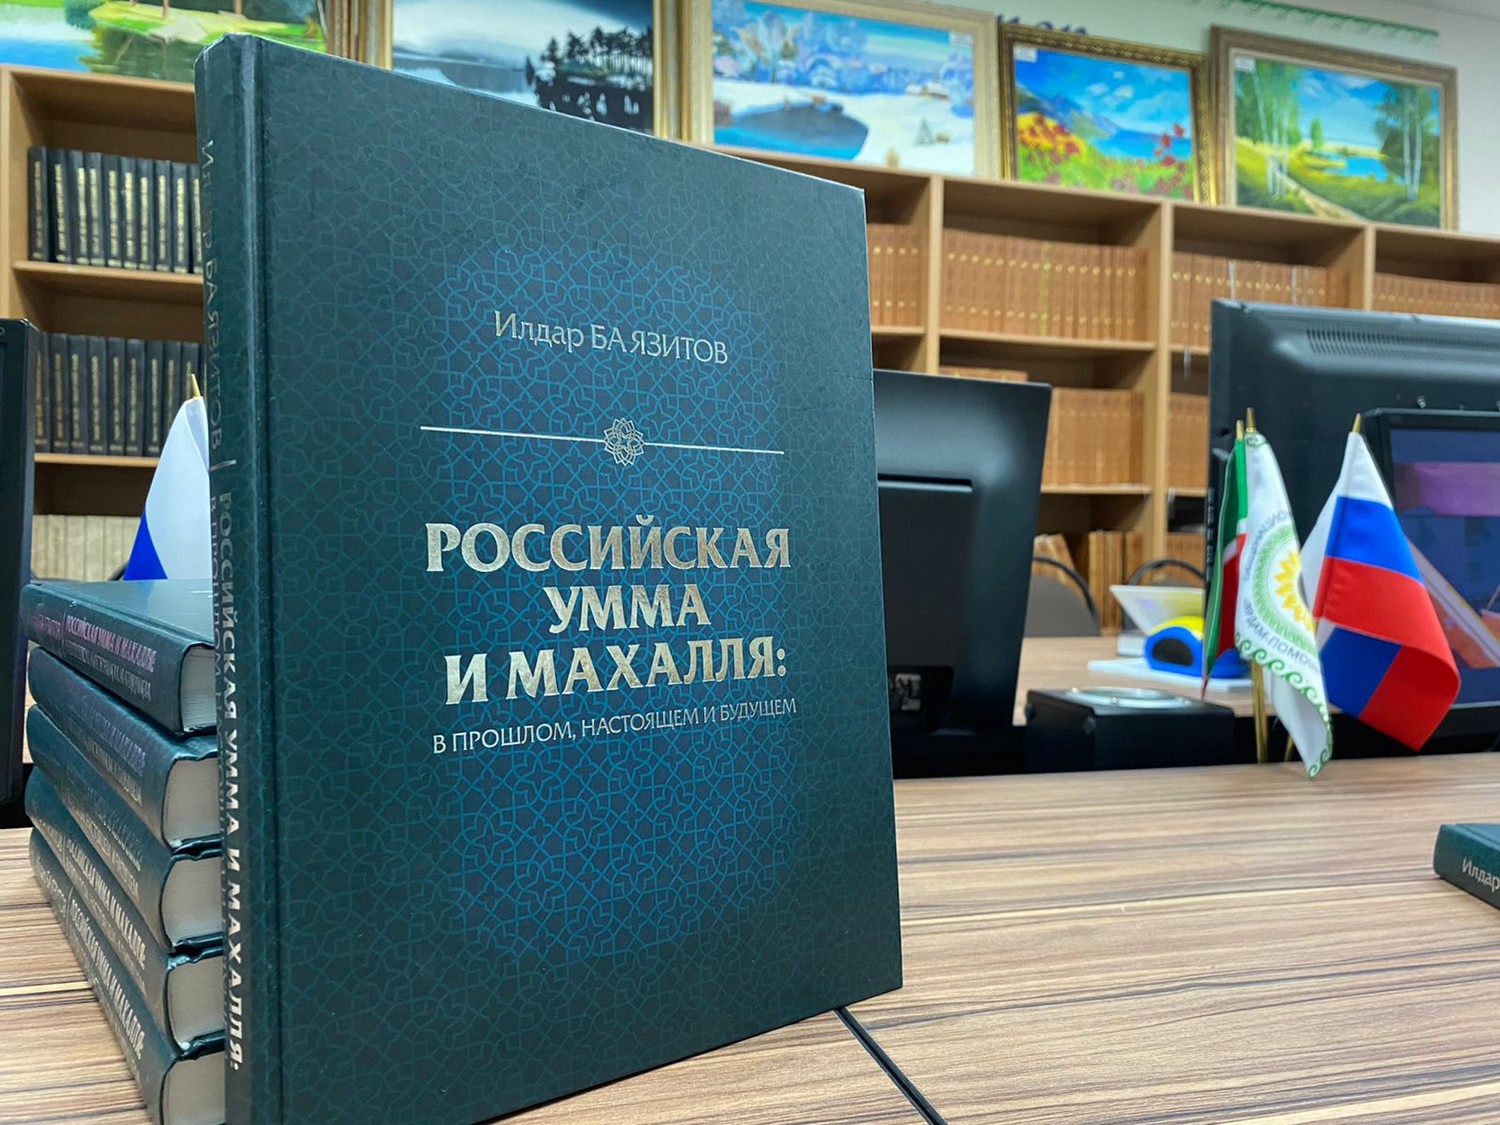 Книга «Российская умма и махалля: в прошлом, настоящем и будущем» вышла в свет в новом формате